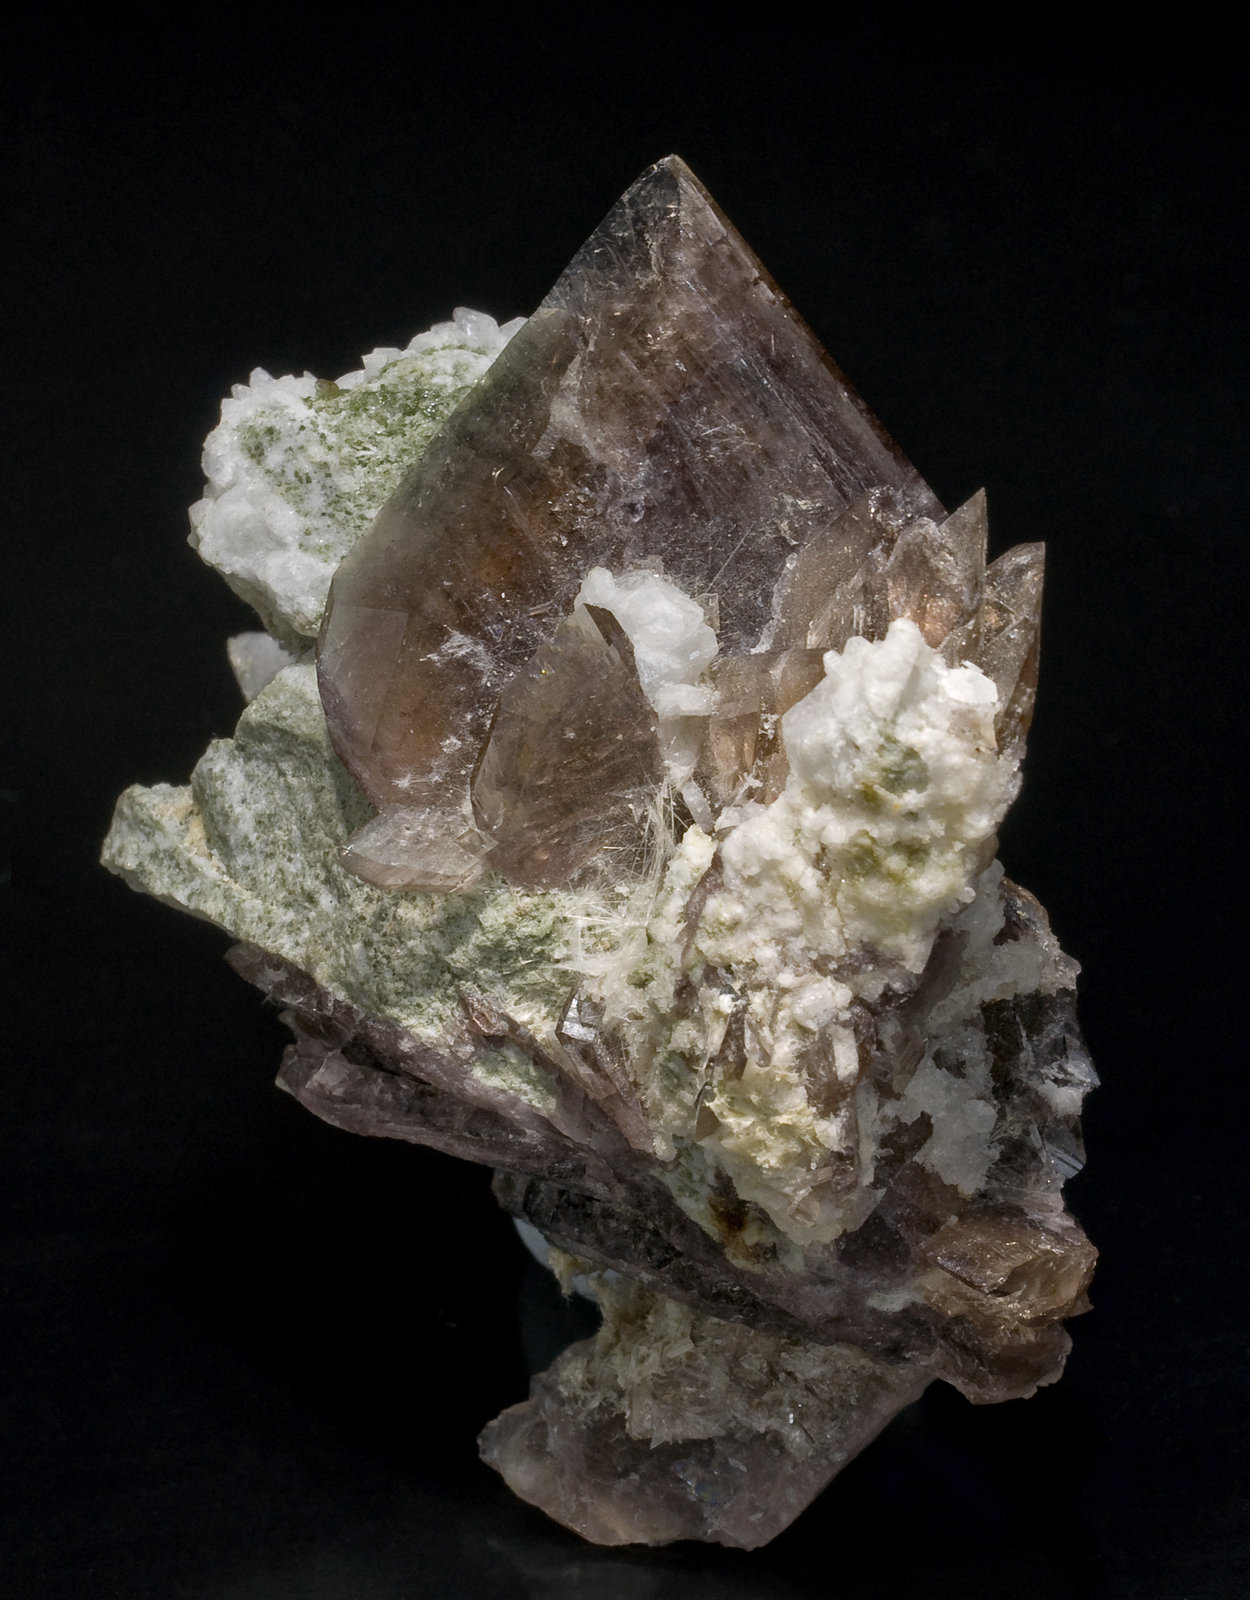 specimens/s_imagesW0/Axinite-JK97W0f.jpg